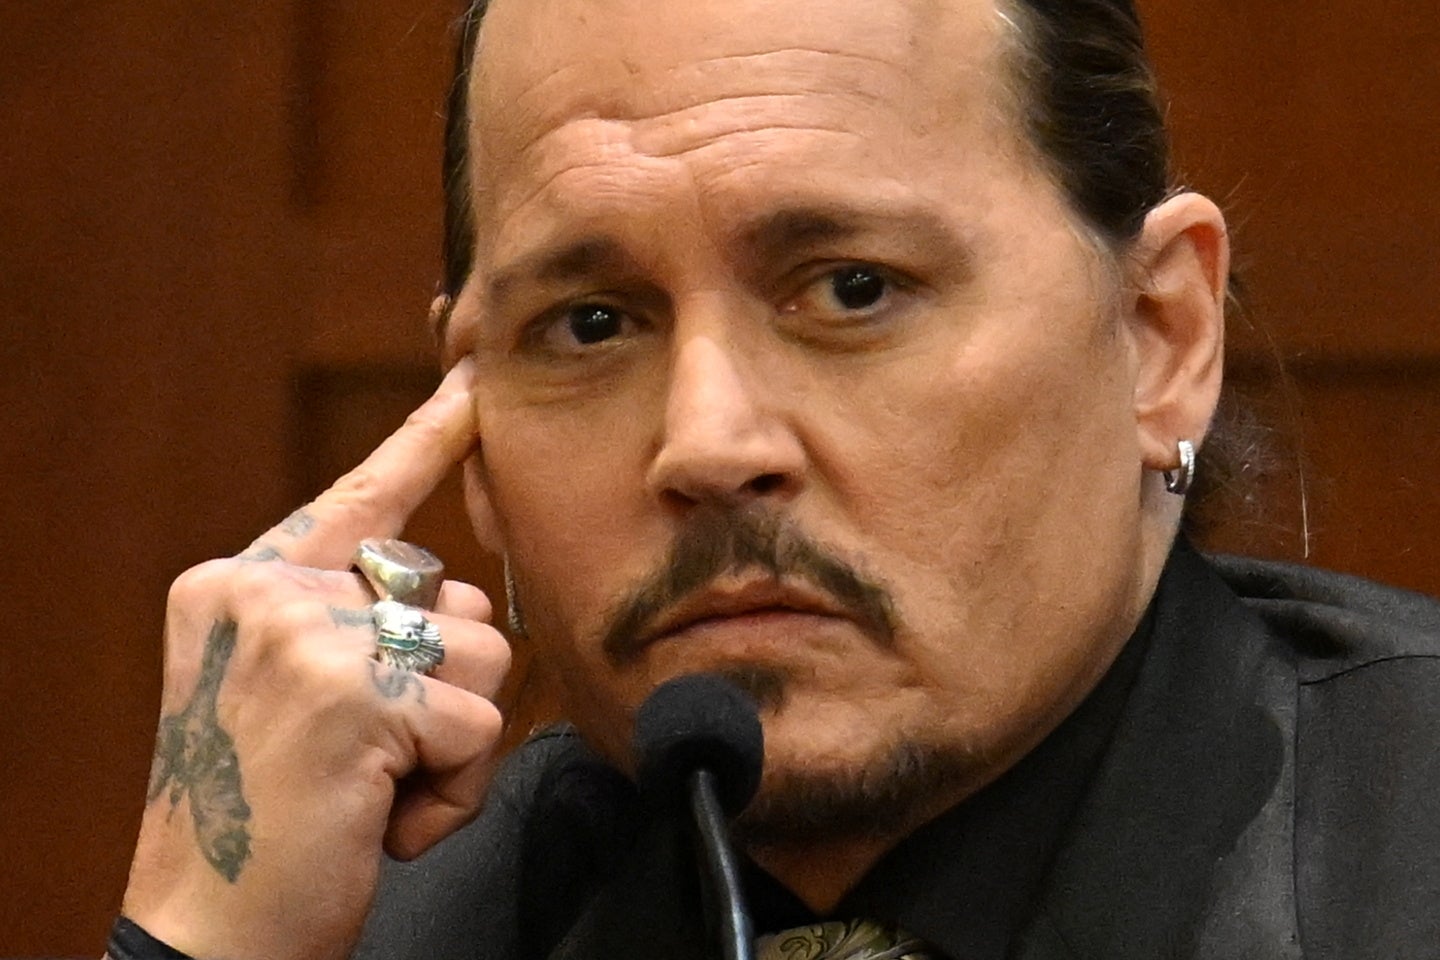 El actor Johnny Depp testifica en la Corte de Circuito del condado de Fairfax mientras su caso de difamación en contra de su exesposa Amber Heard continúa en Fairfax, Virginia, EE.UU., el 19 de abril de 2022